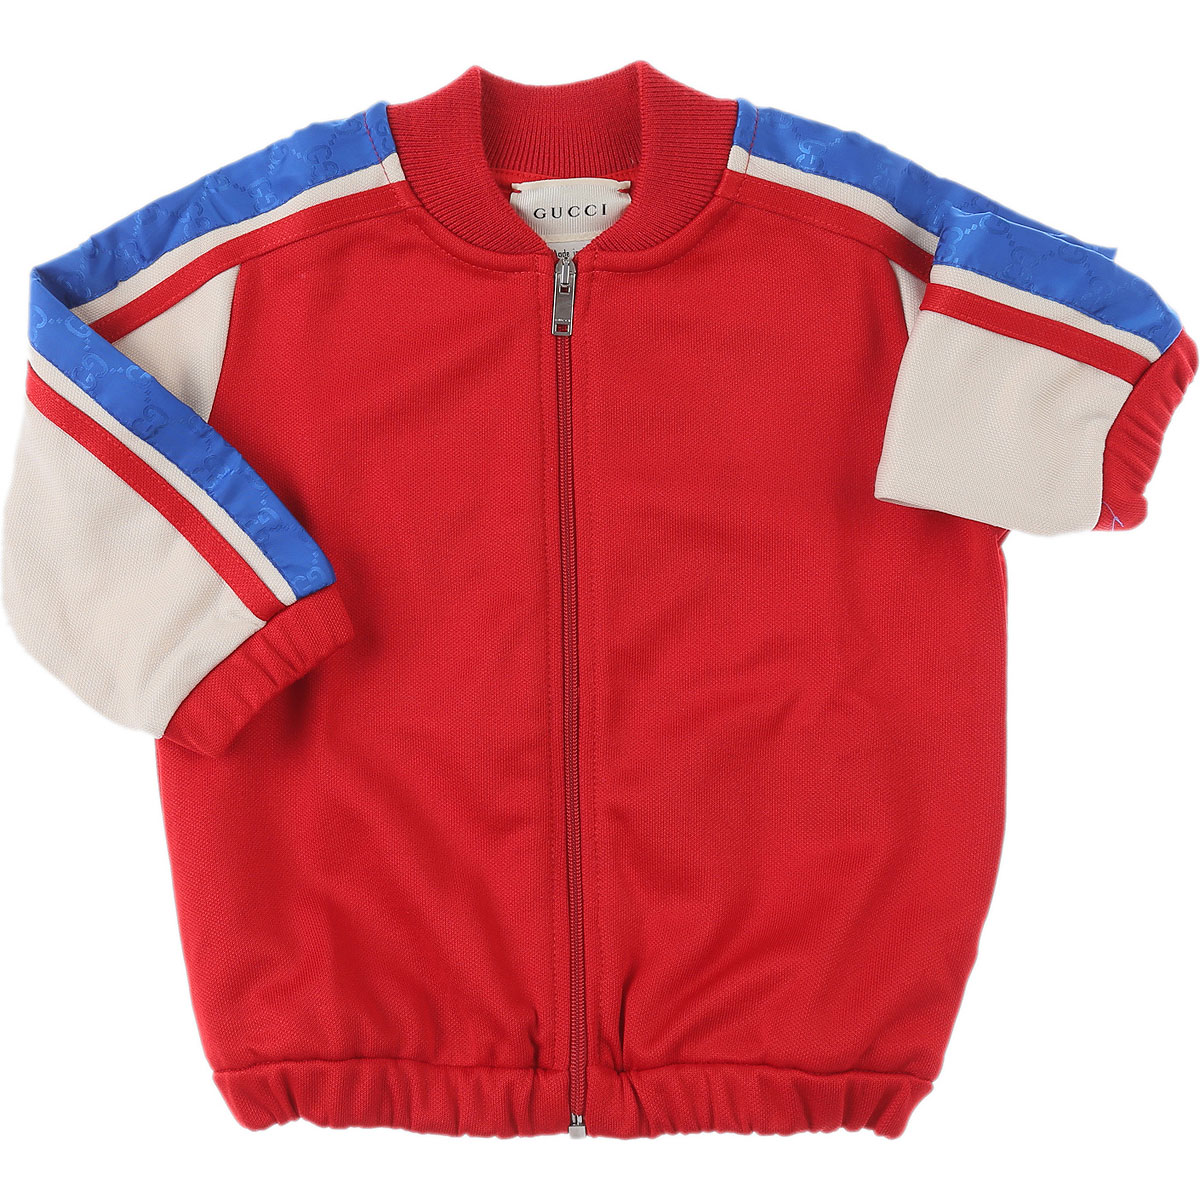 Gucci Baby Sweatshirt & Kapuzenpullover für Jungen Günstig im Sale, Rot, Polyester, 2017, 18M 24M 3Y 6M 9M